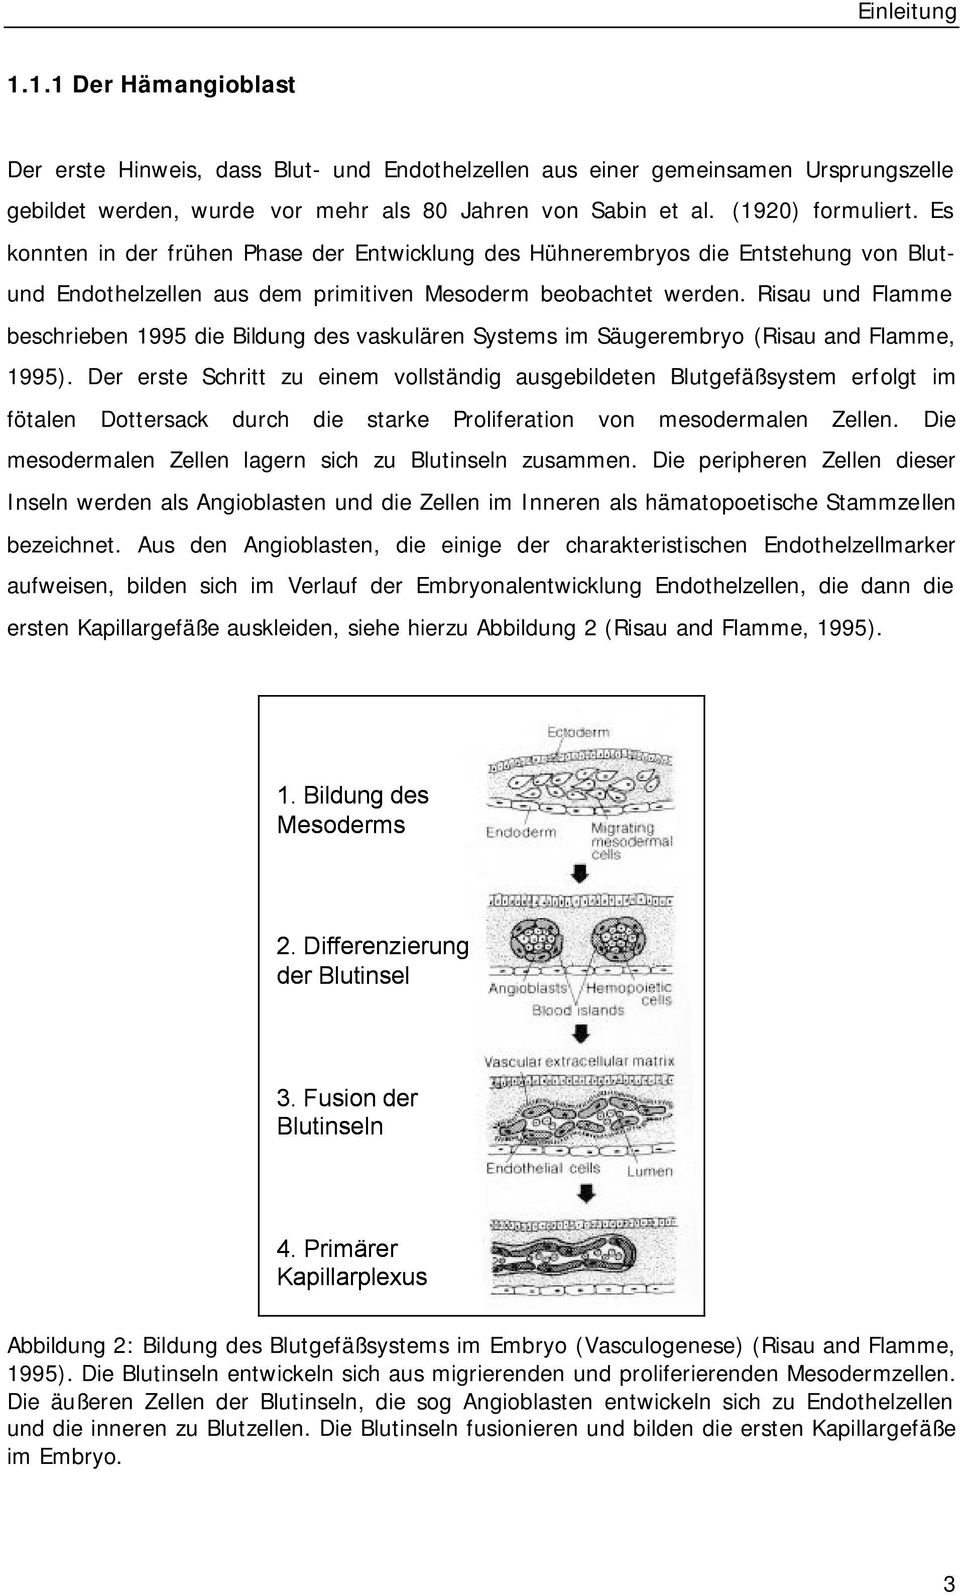 Risau und Flamme beschrieben 1995 die Bildung des vaskulären Systems im Säugerembryo (Risau and Flamme, 1995).